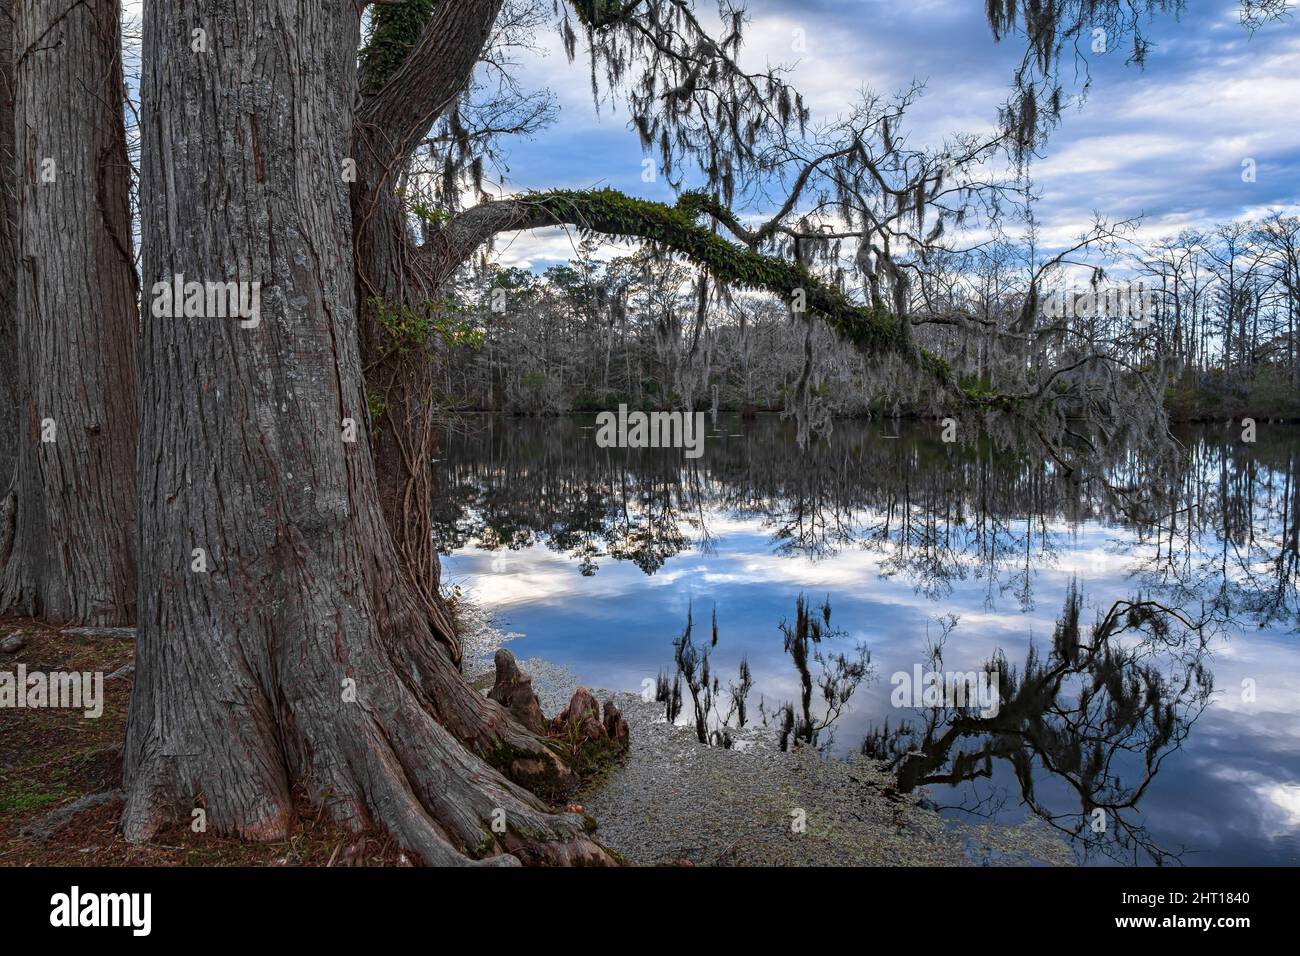 Schöne Landschaft von einem higen Baum an einem Wassersee mit Bäumen und einem bewölkten Himmel Stockfoto